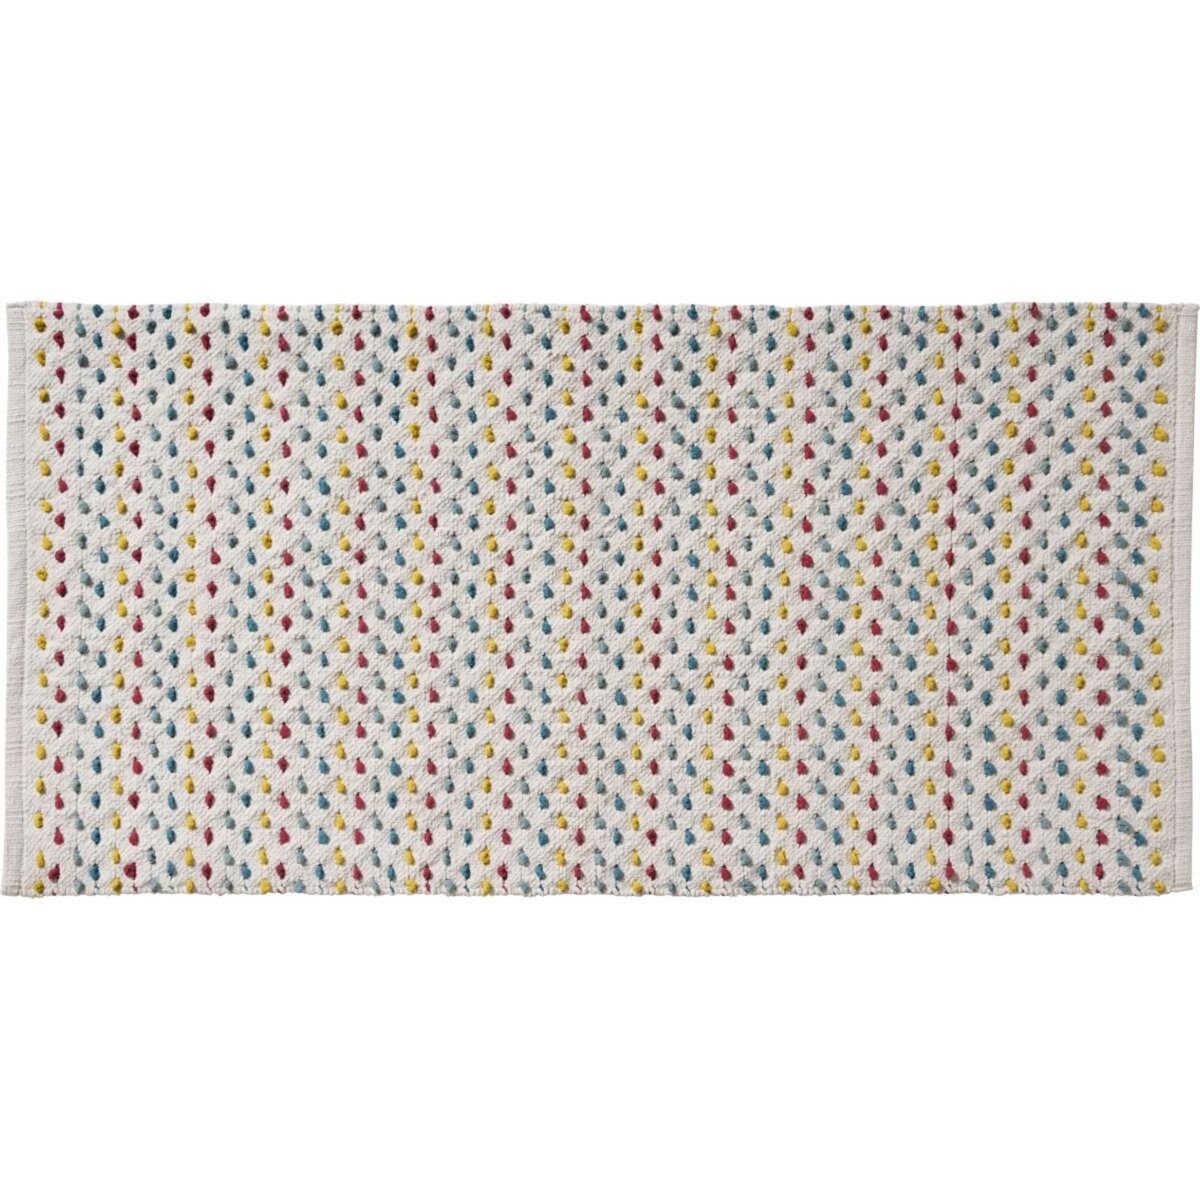 GUY LEVASSEUR Tapis en coton fantaisie multicouleur 60x120cm